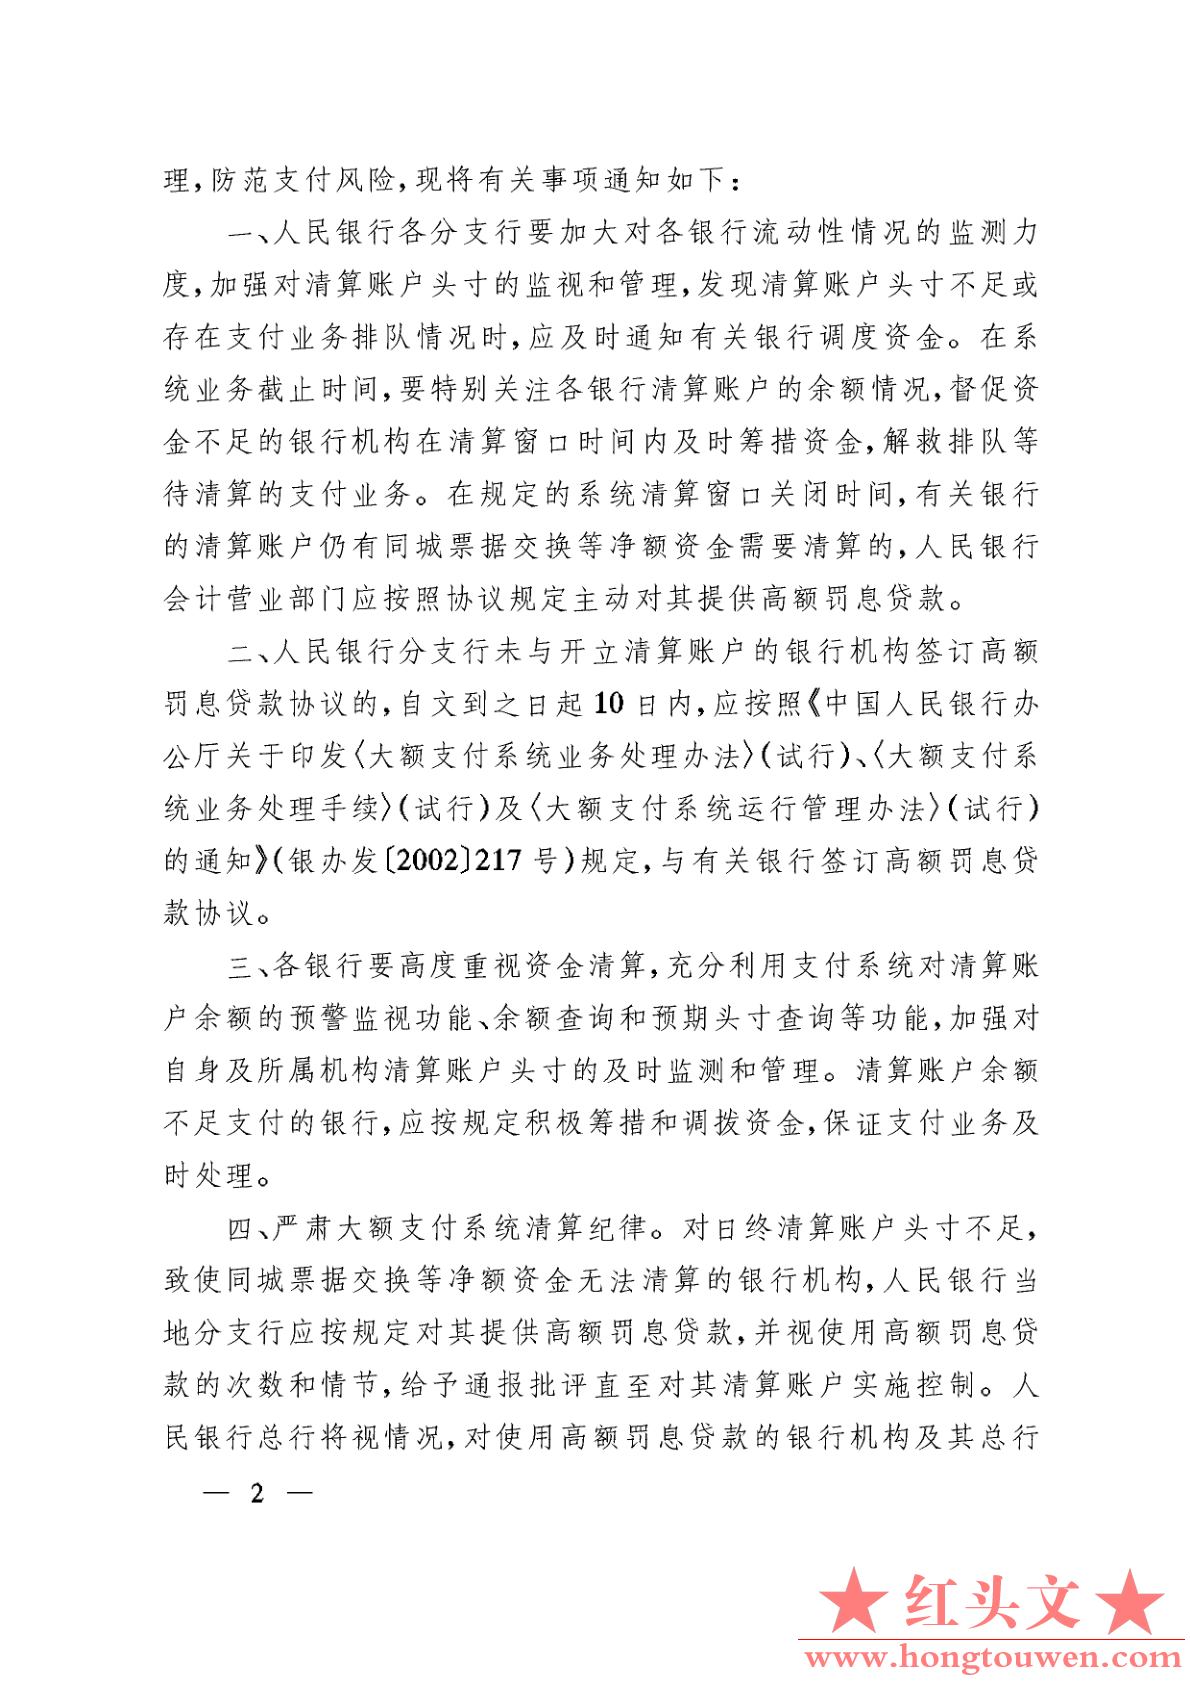 银发[2003]193号-中国人民银行关于加强大额支付系统清算管理的通知_2.png